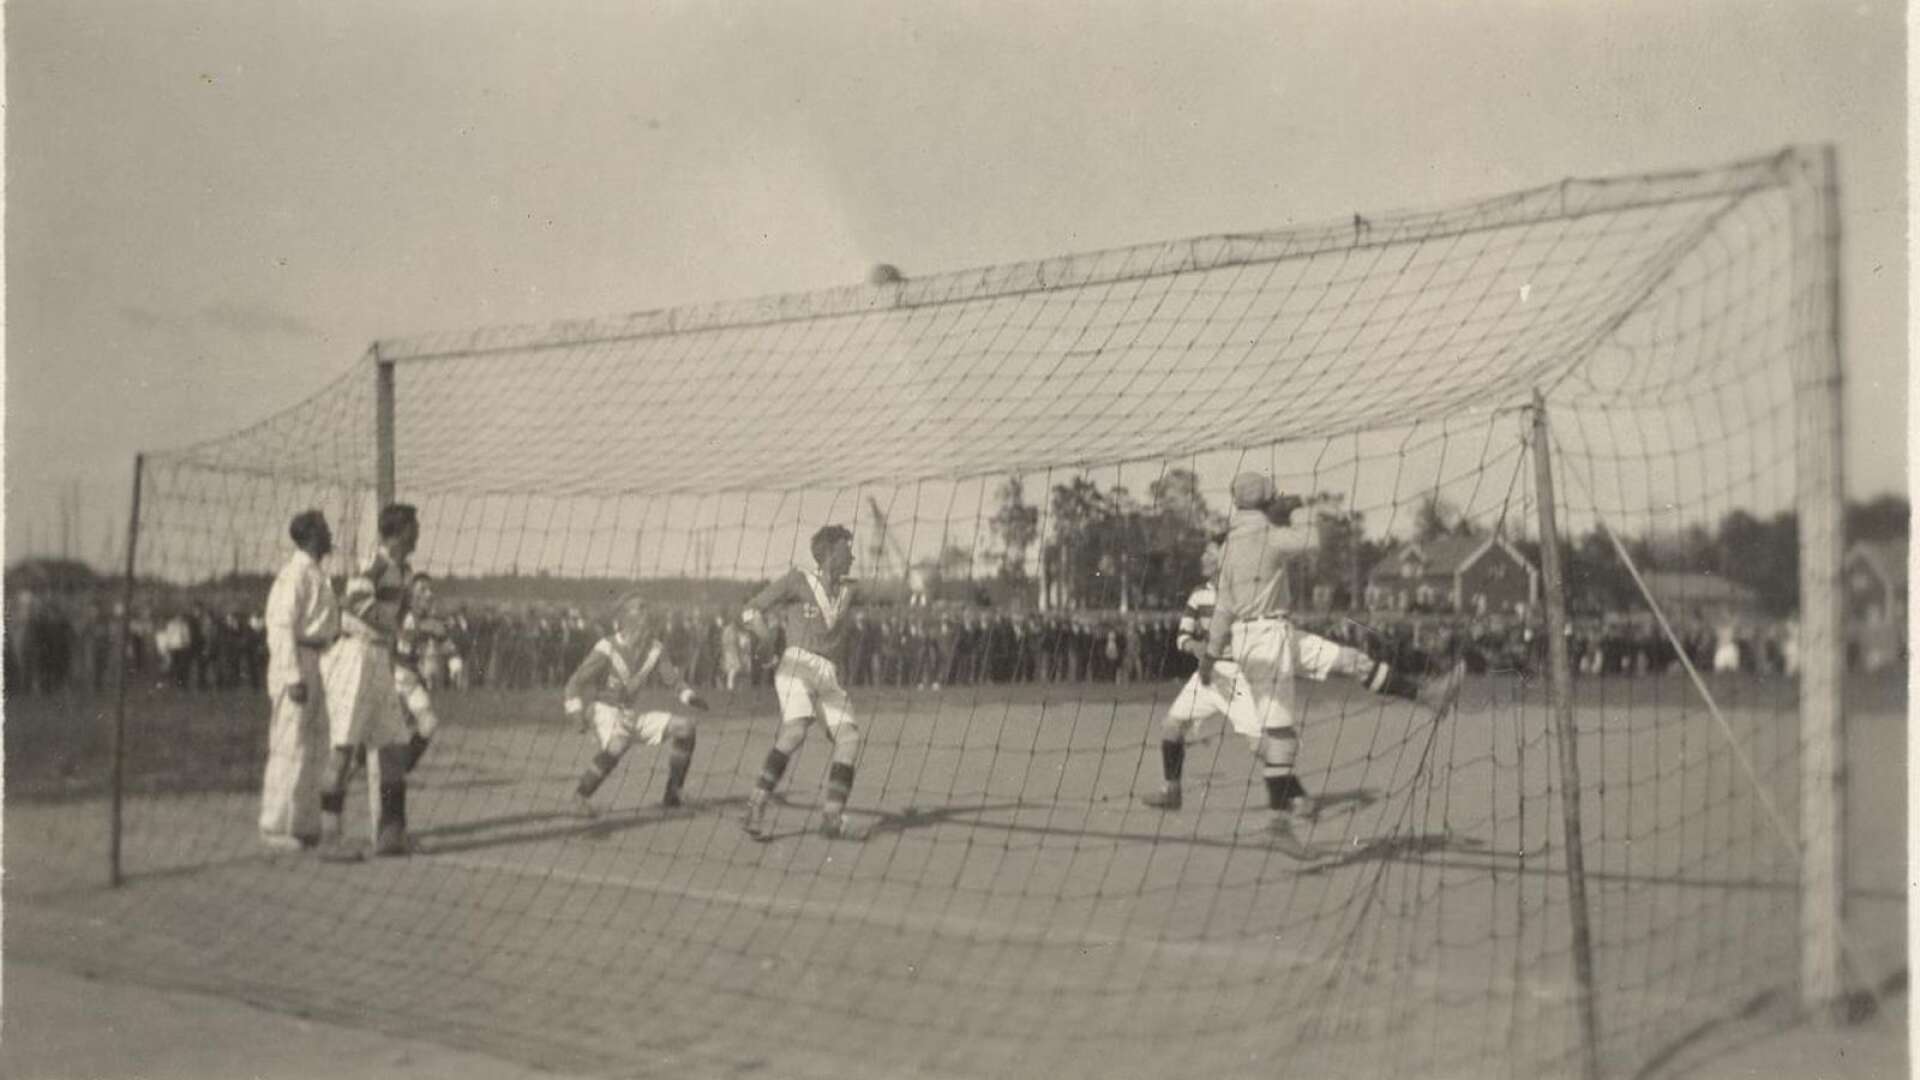 Skoghall möter Slottsbron i en fotbollsmatch på gamla Lunnevi 1928.